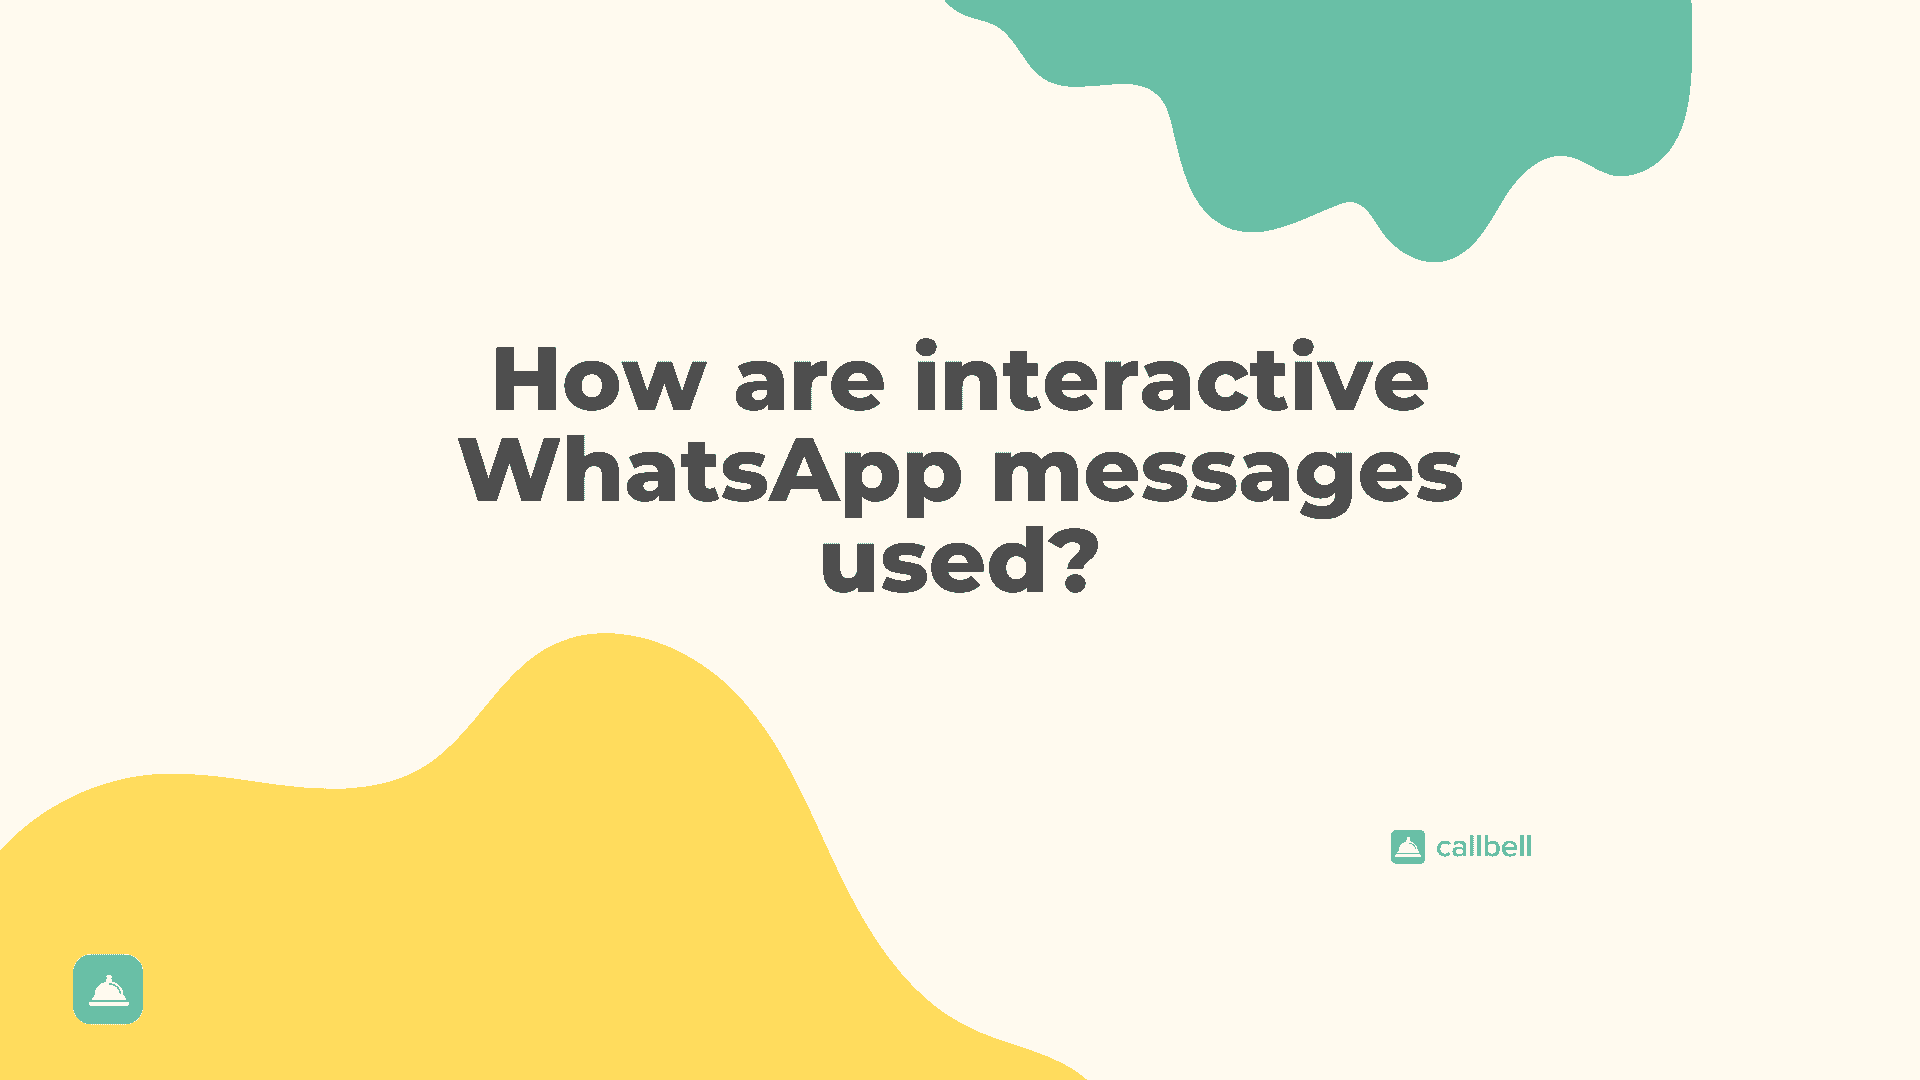 Messaggi WhatsApp interattivi